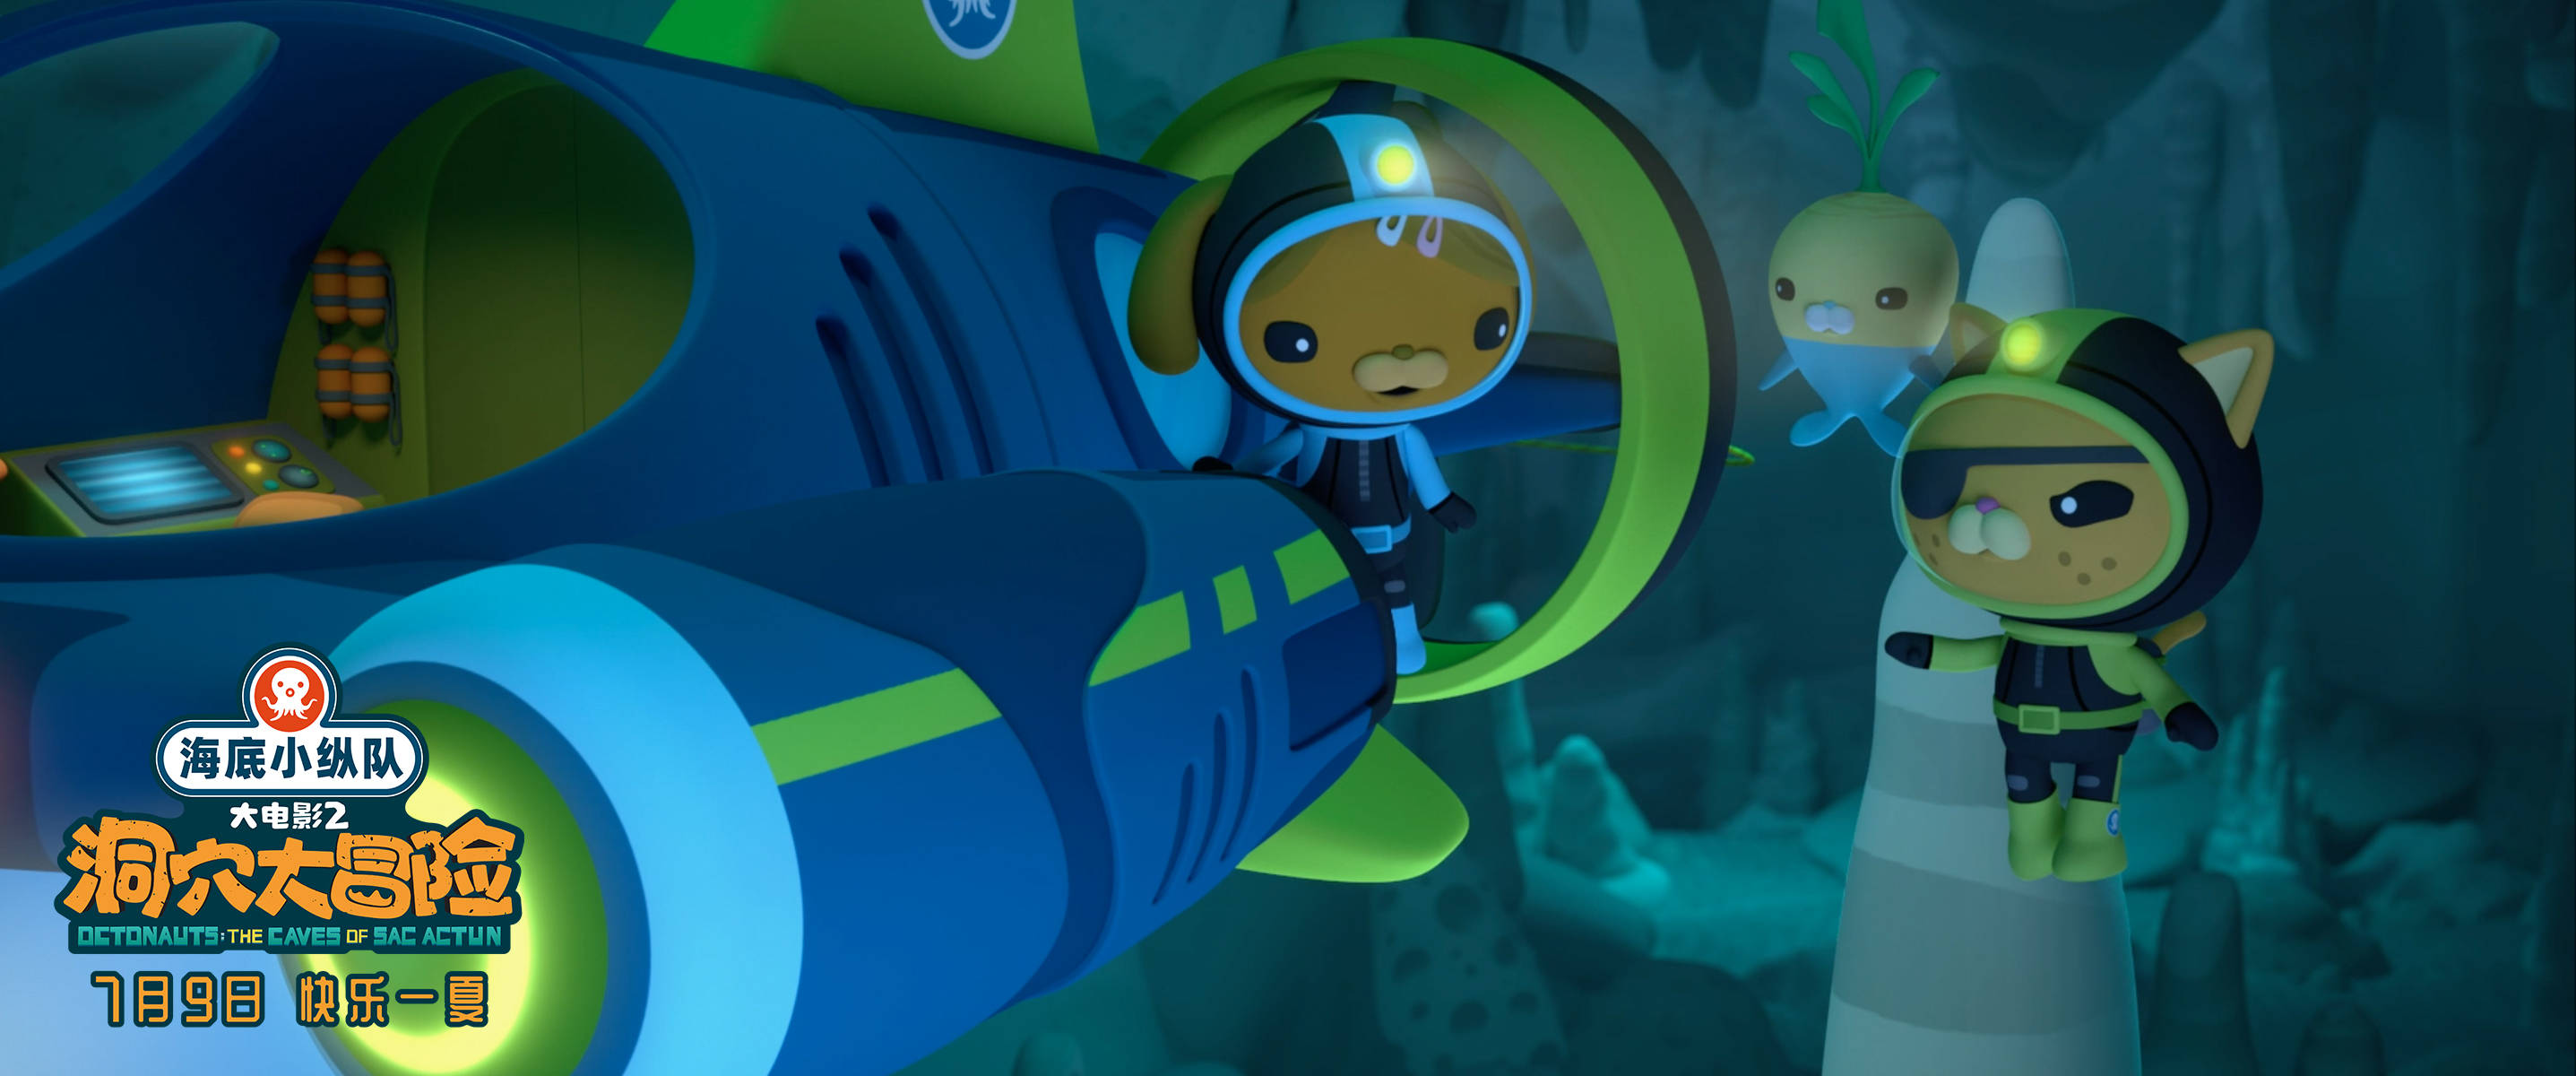 全球知名动画ip系列大电影海底小纵队洞穴大冒险定档7月9日夏日必看